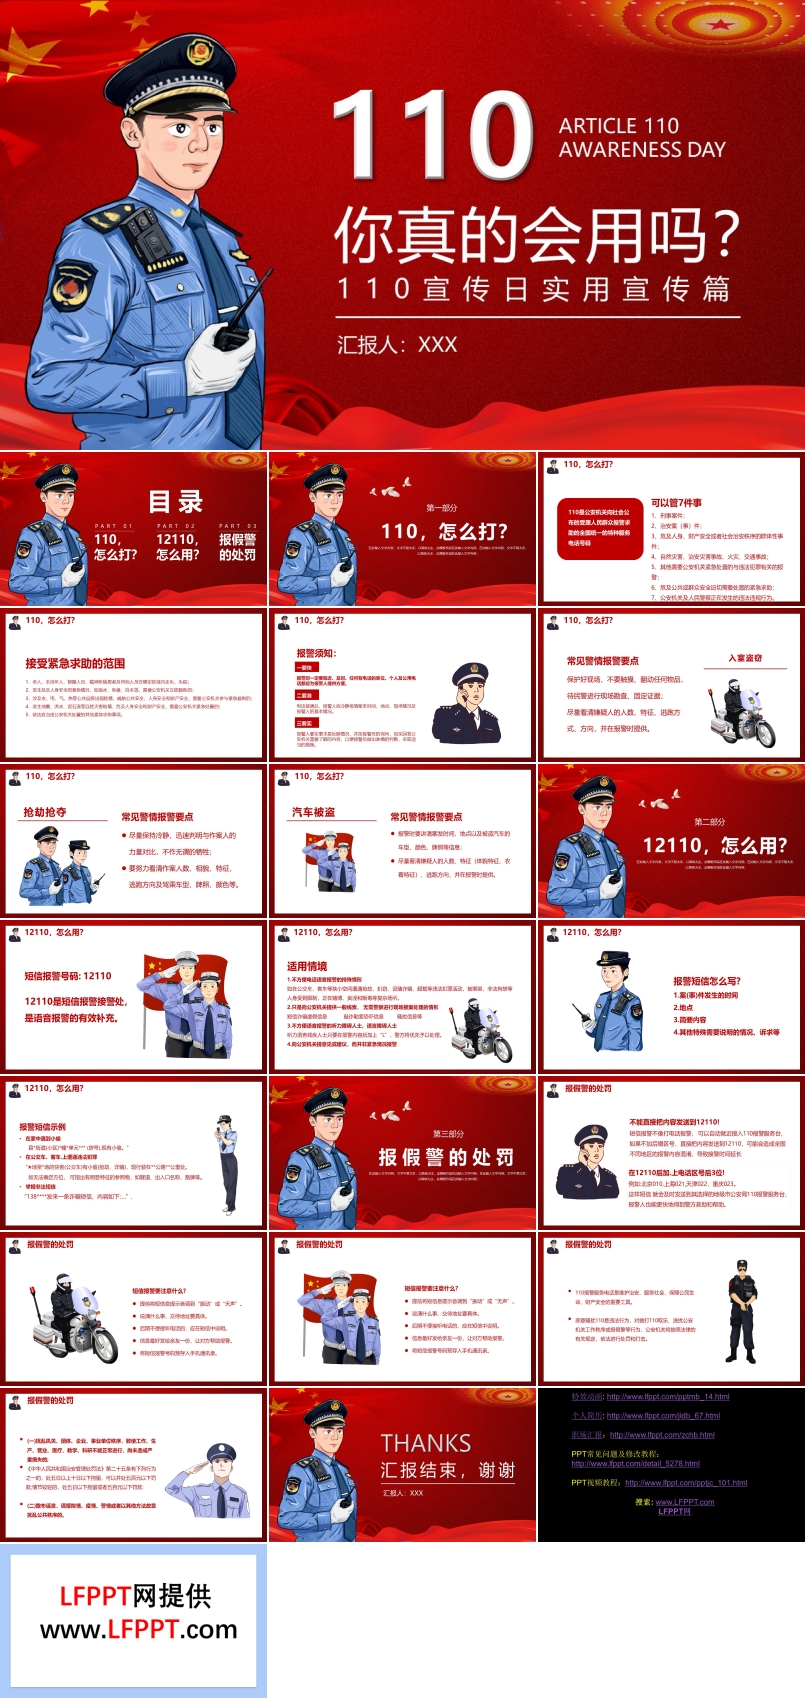 110宣傳日報警知識PPT中國人民警察節